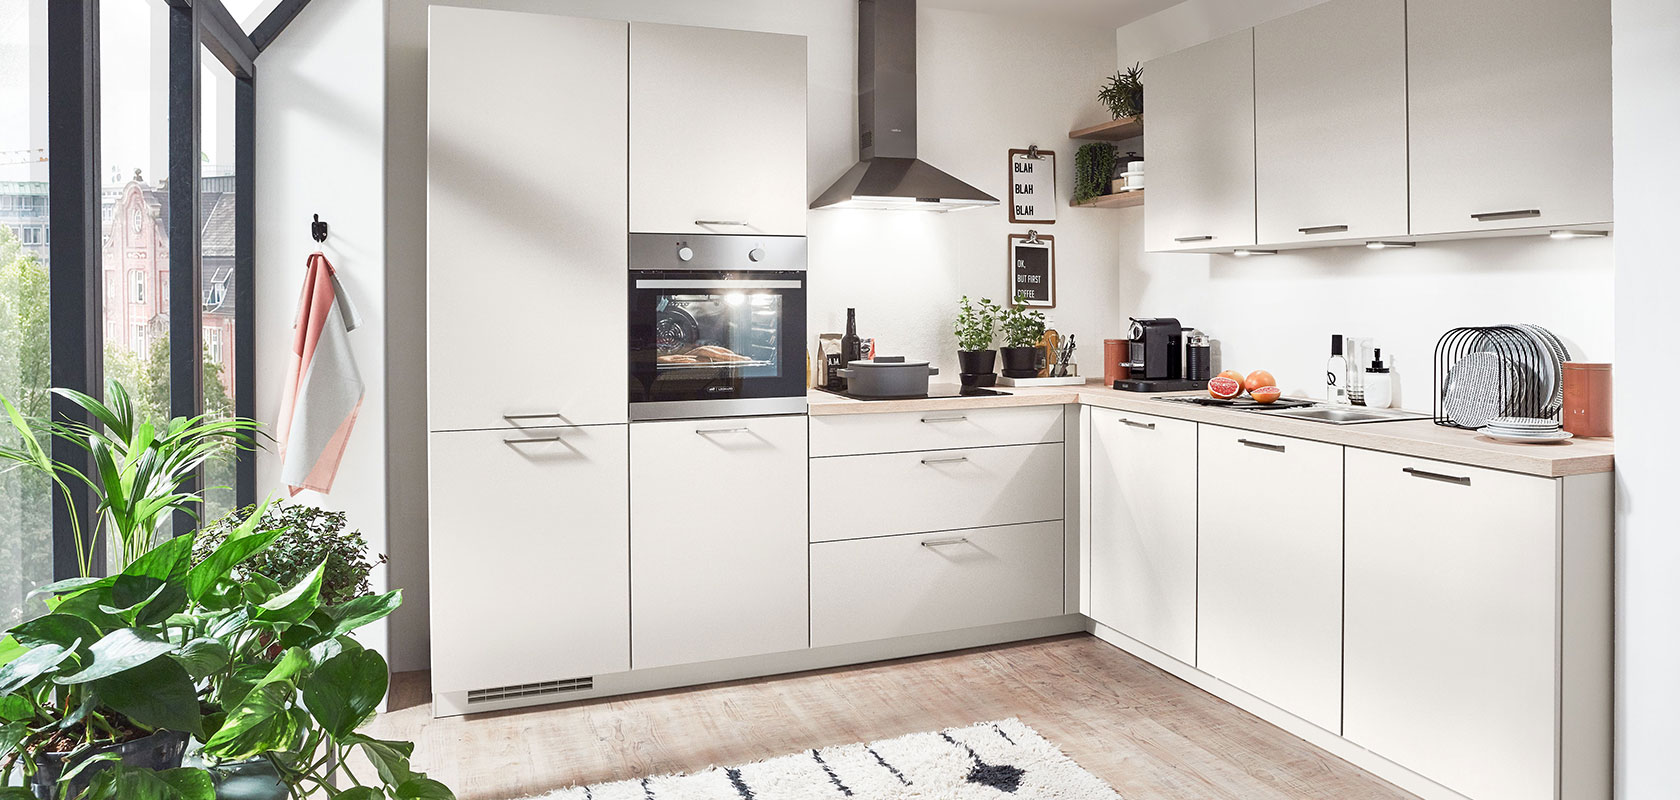 Moderne Kücheninnenräume mit weißen Schränken, eingebauten Geräten und einem Hauch von Grün durch das Fenster, die ein sauberes und zeitgemäßes städtisches Wohndesign veranschaulichen.